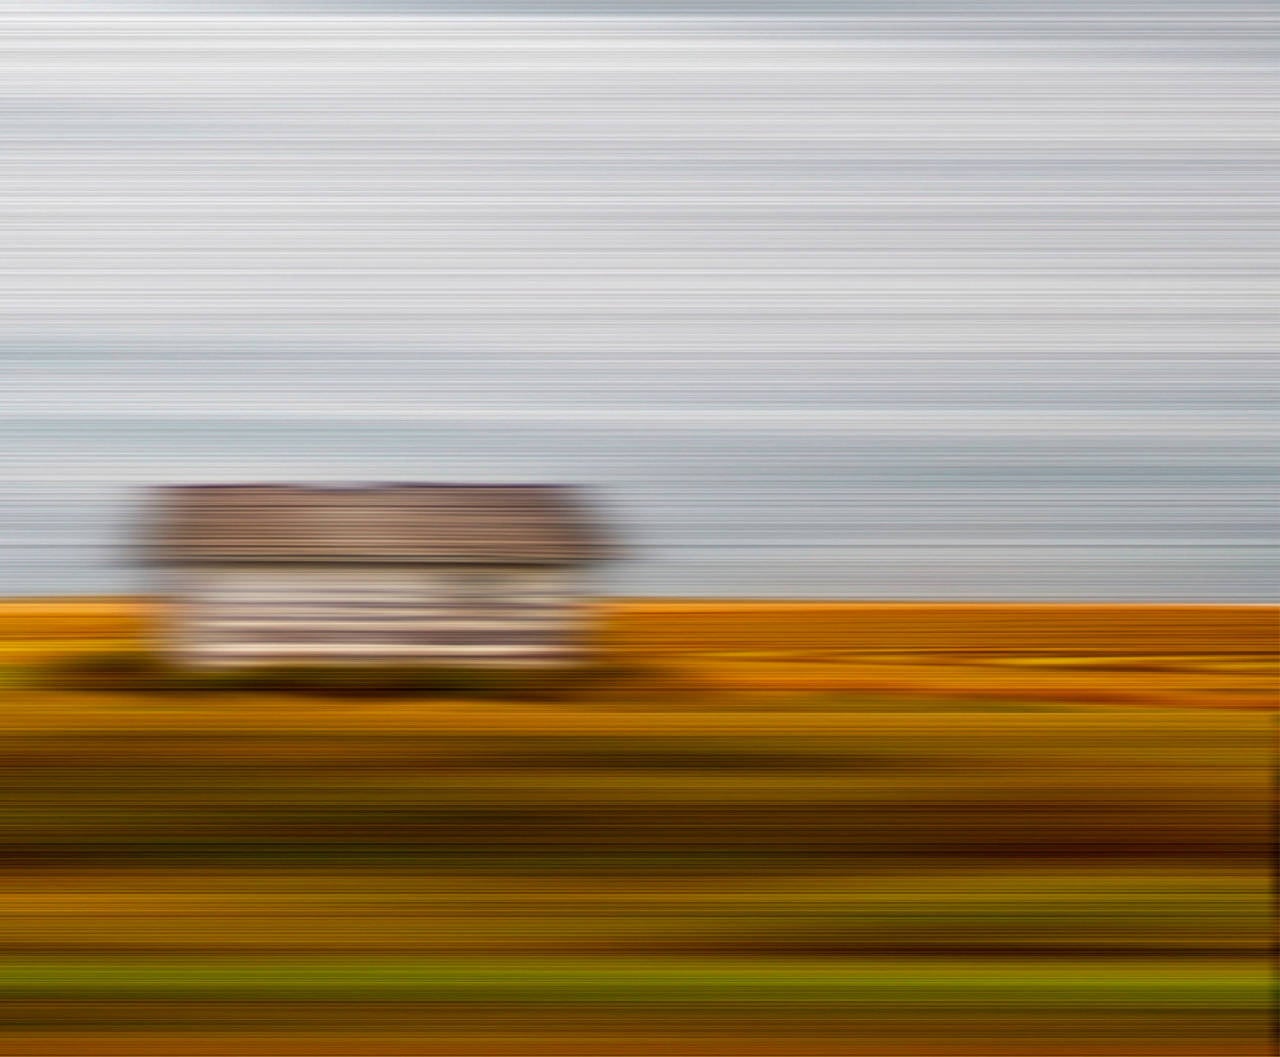 Farmland Afternoon V2 - contemporain, paysage abstrait, photographie sur dibond - Photograph de Etienne Labbe